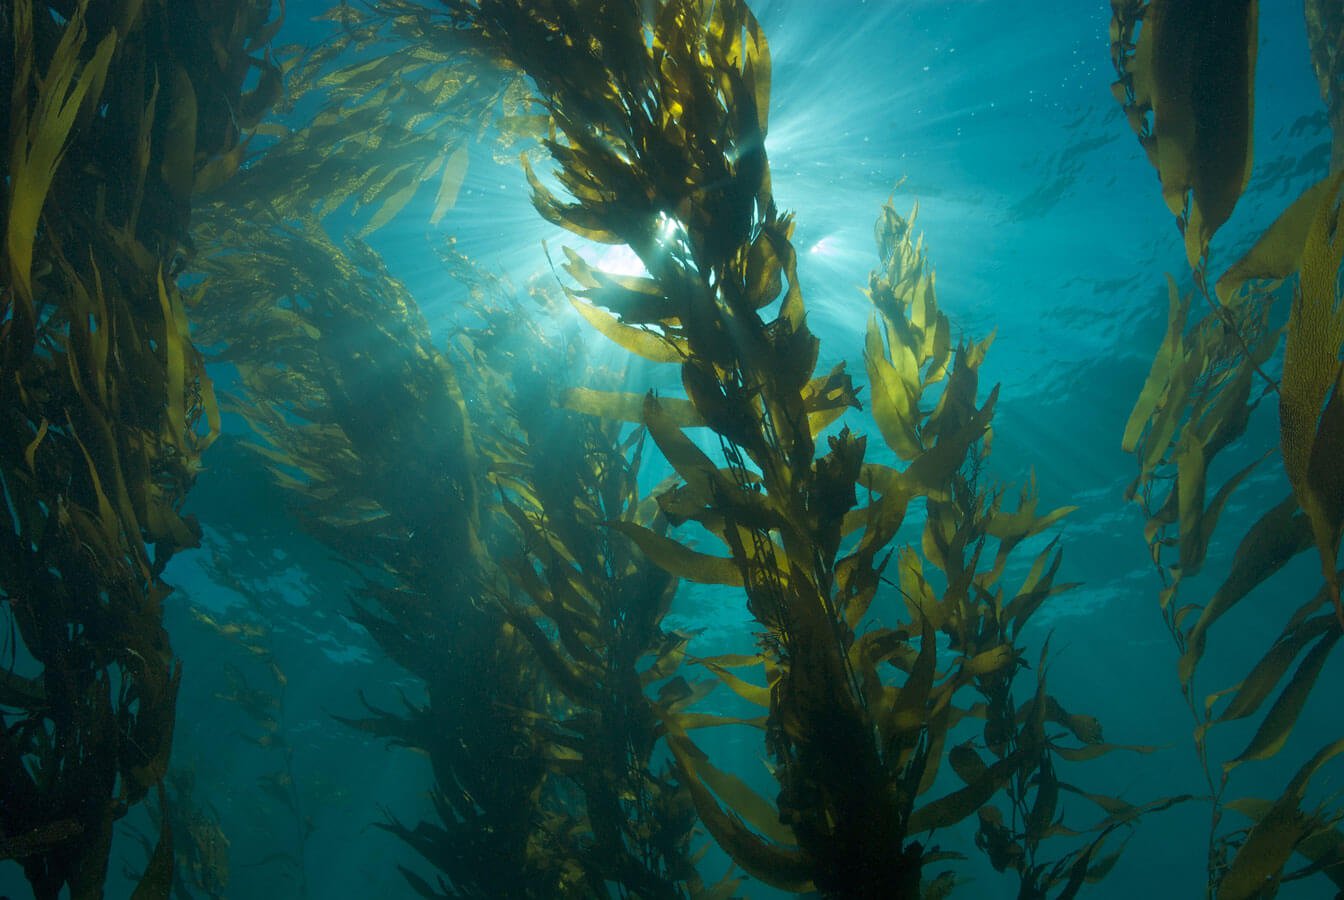 Velenosi alghe uccidono animali e infettano gli esseri umani. Presto diventeranno ancora più pericoloso